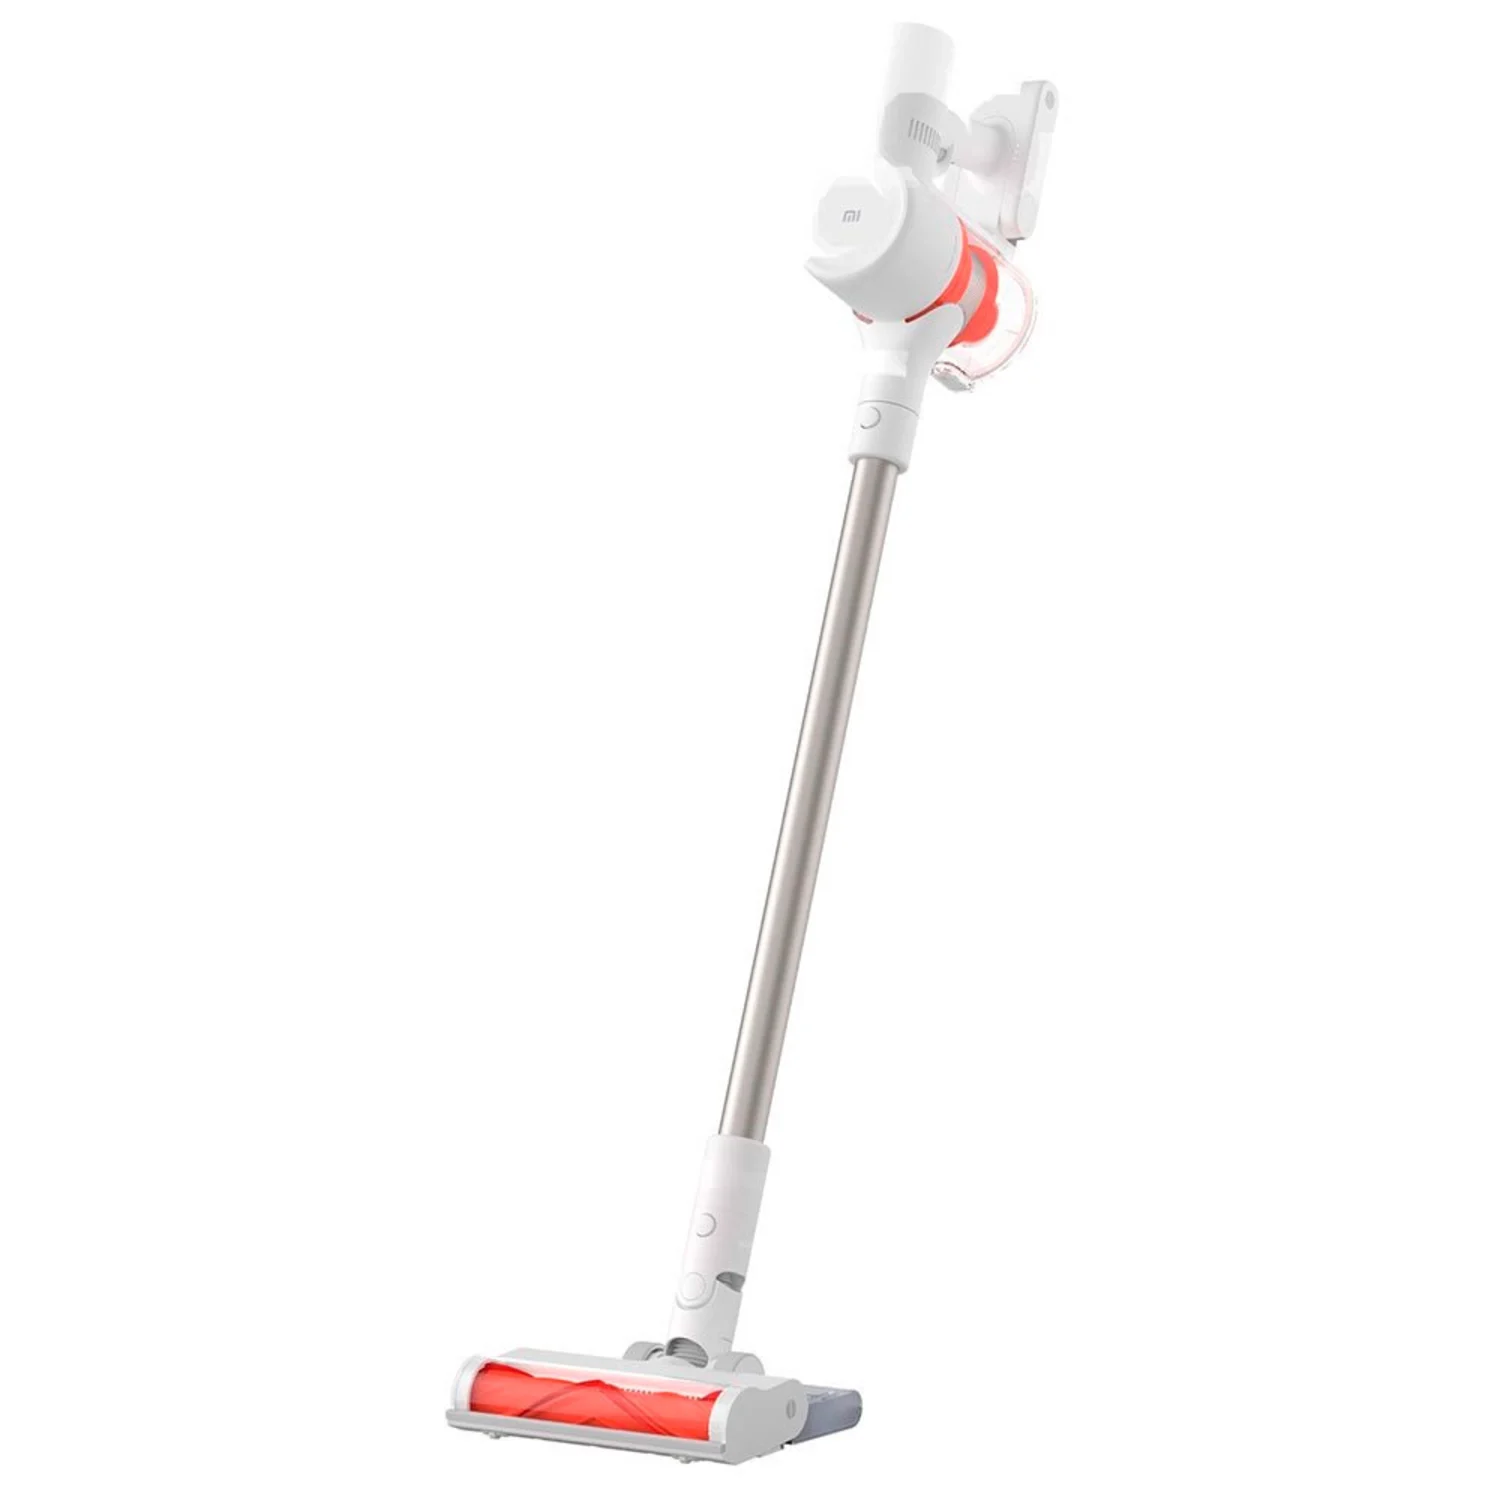 Aspirador Xiaomi Mi Vacuum Cleaner G10 - Branco (BHR4307GL)
